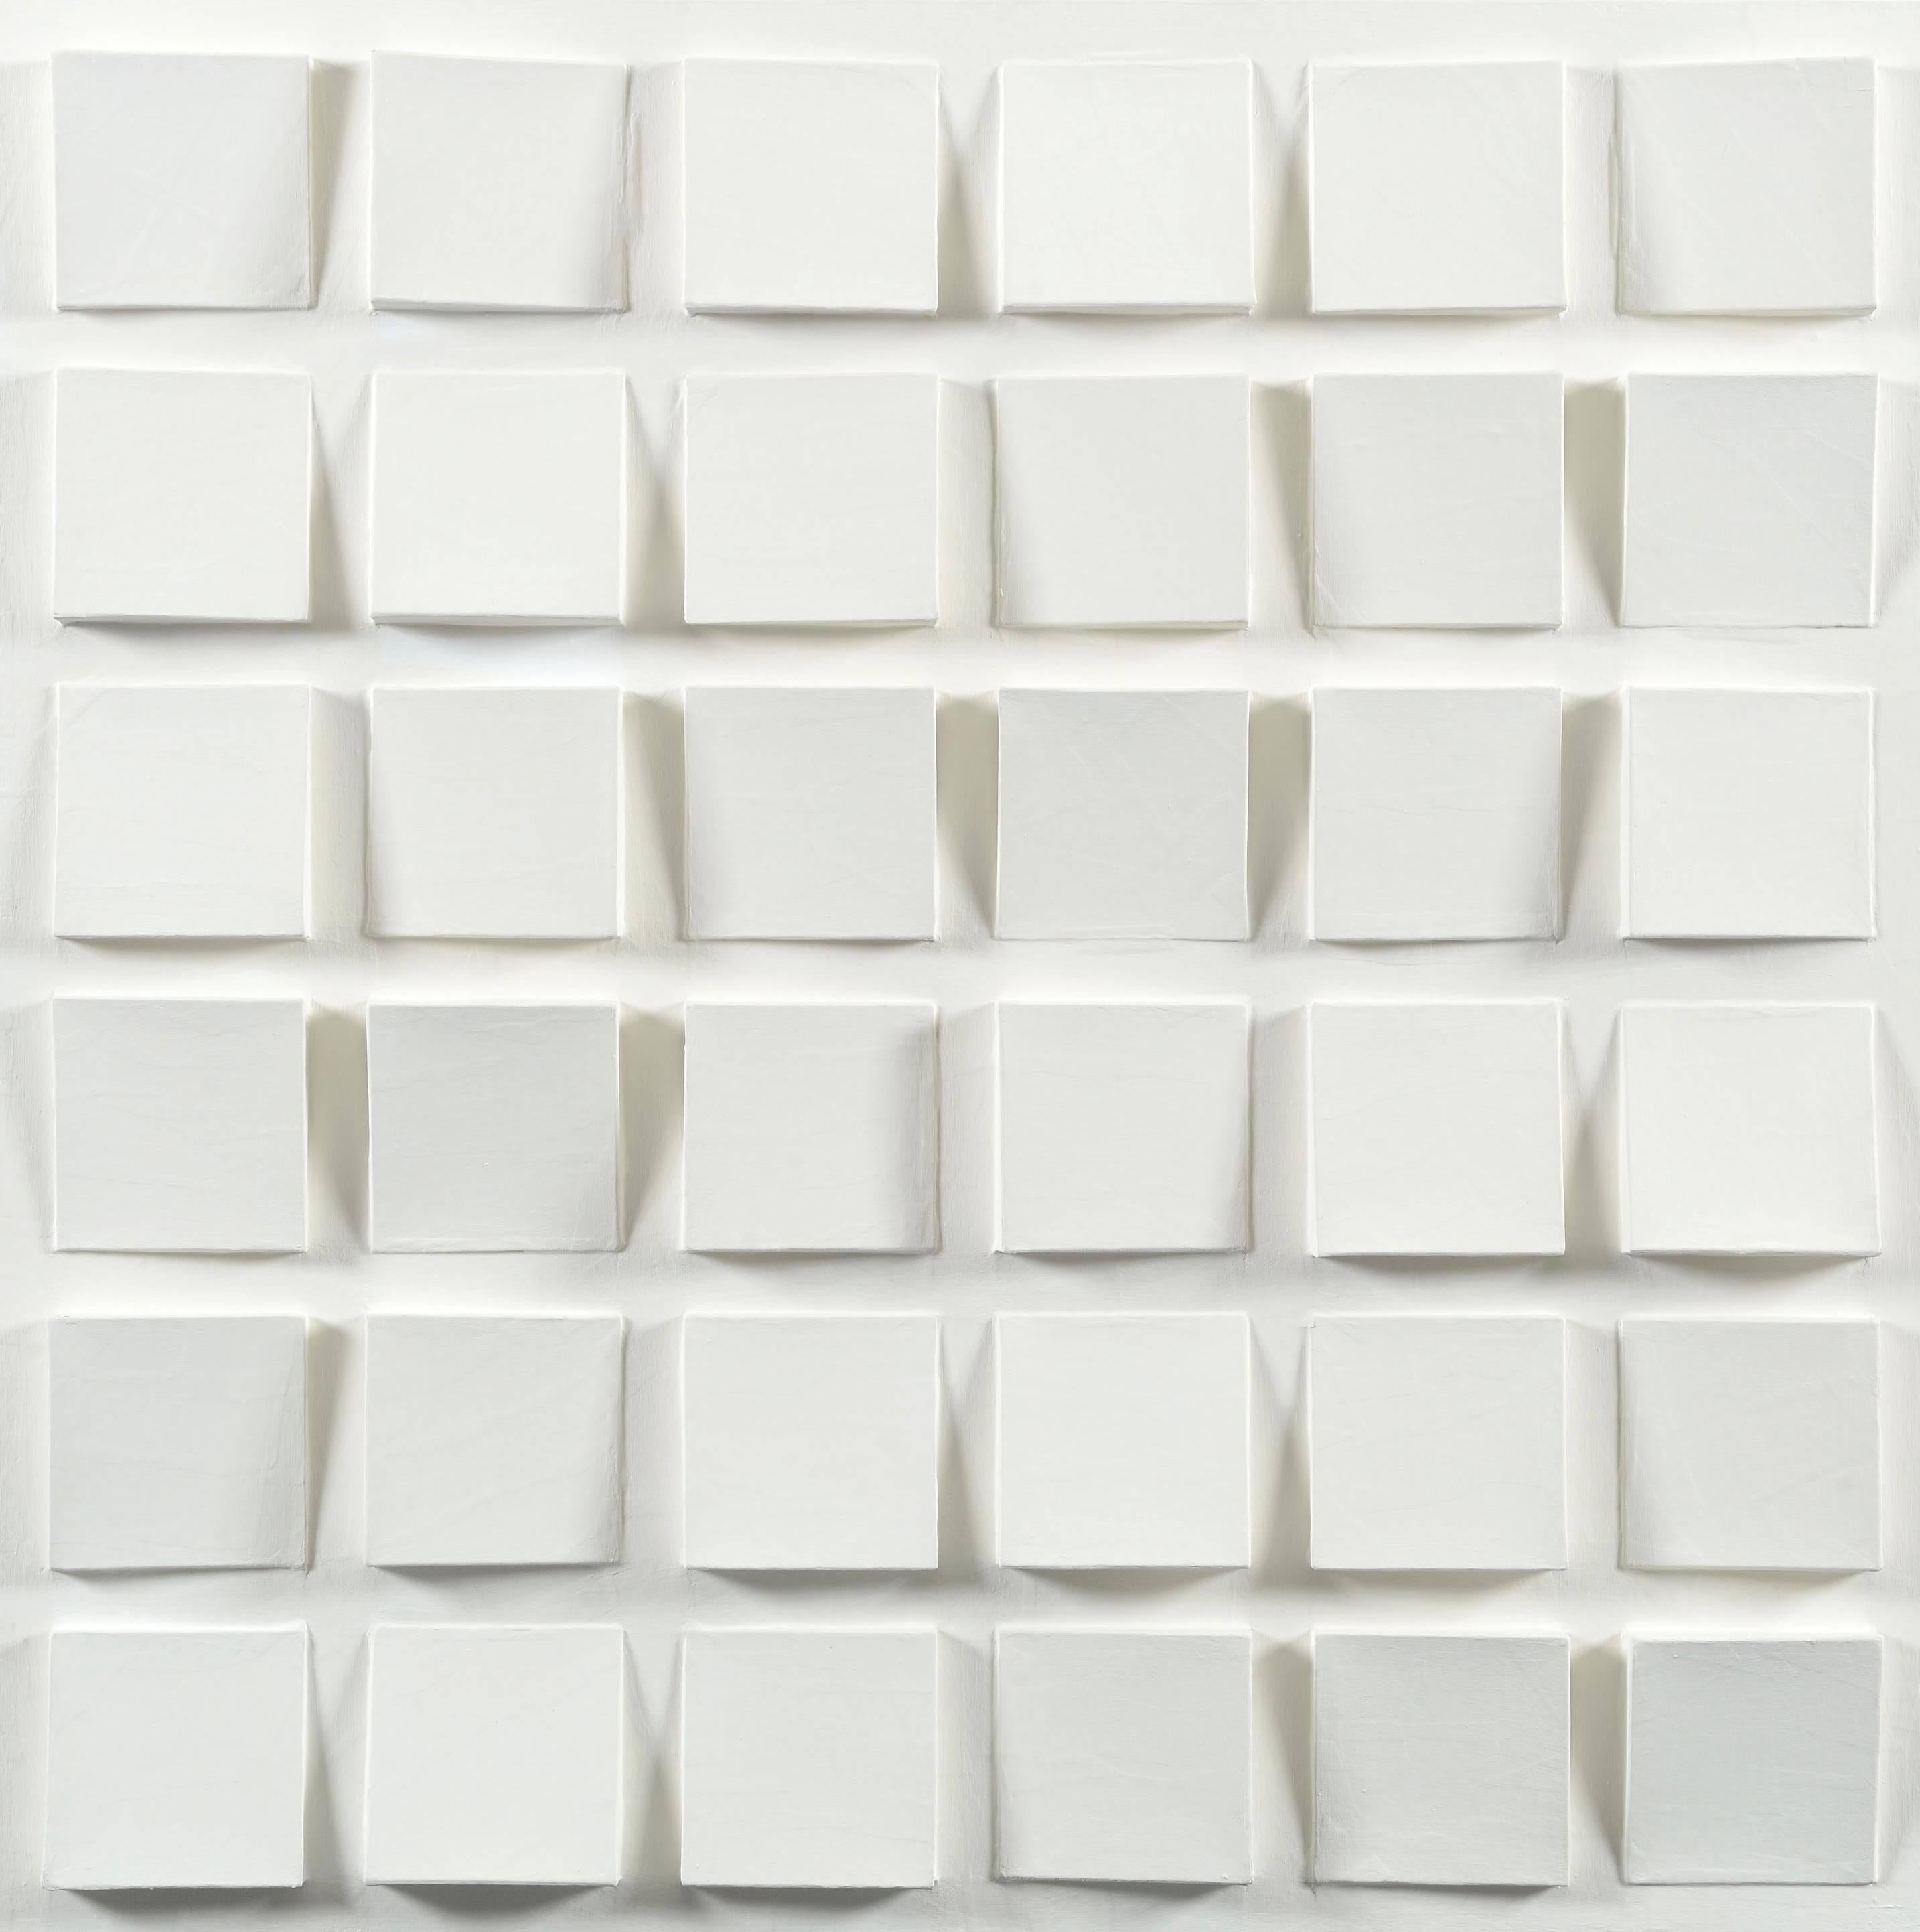 Floating Cubes (Zwevende Kubussen) - Mixed Media Art by Jaap Egmond